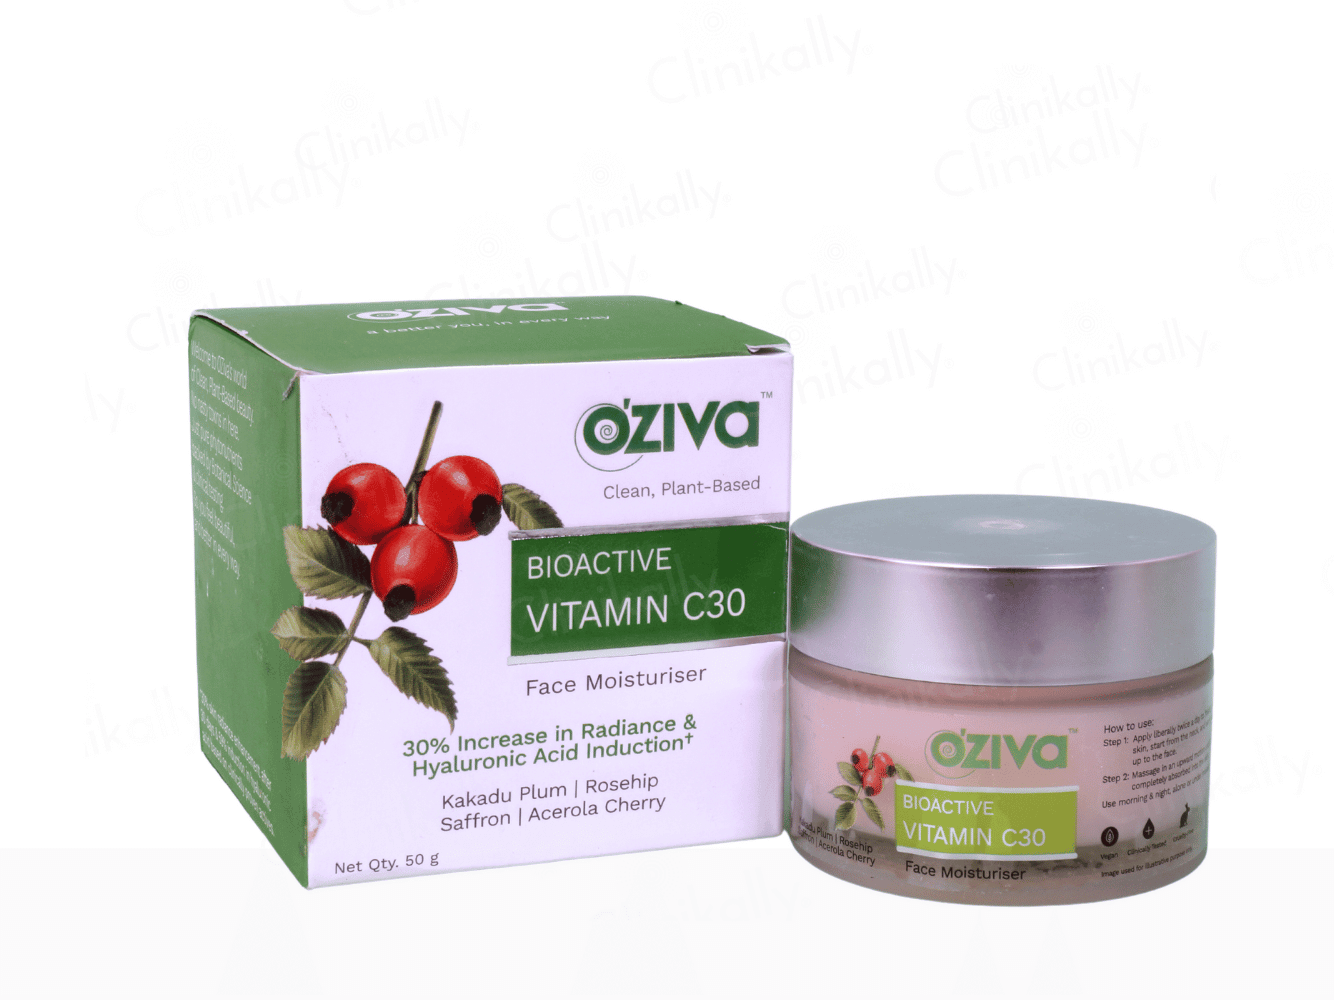 OZiva Bioactive Vitamin C30 Face Moisturiser Cream - Clinikally